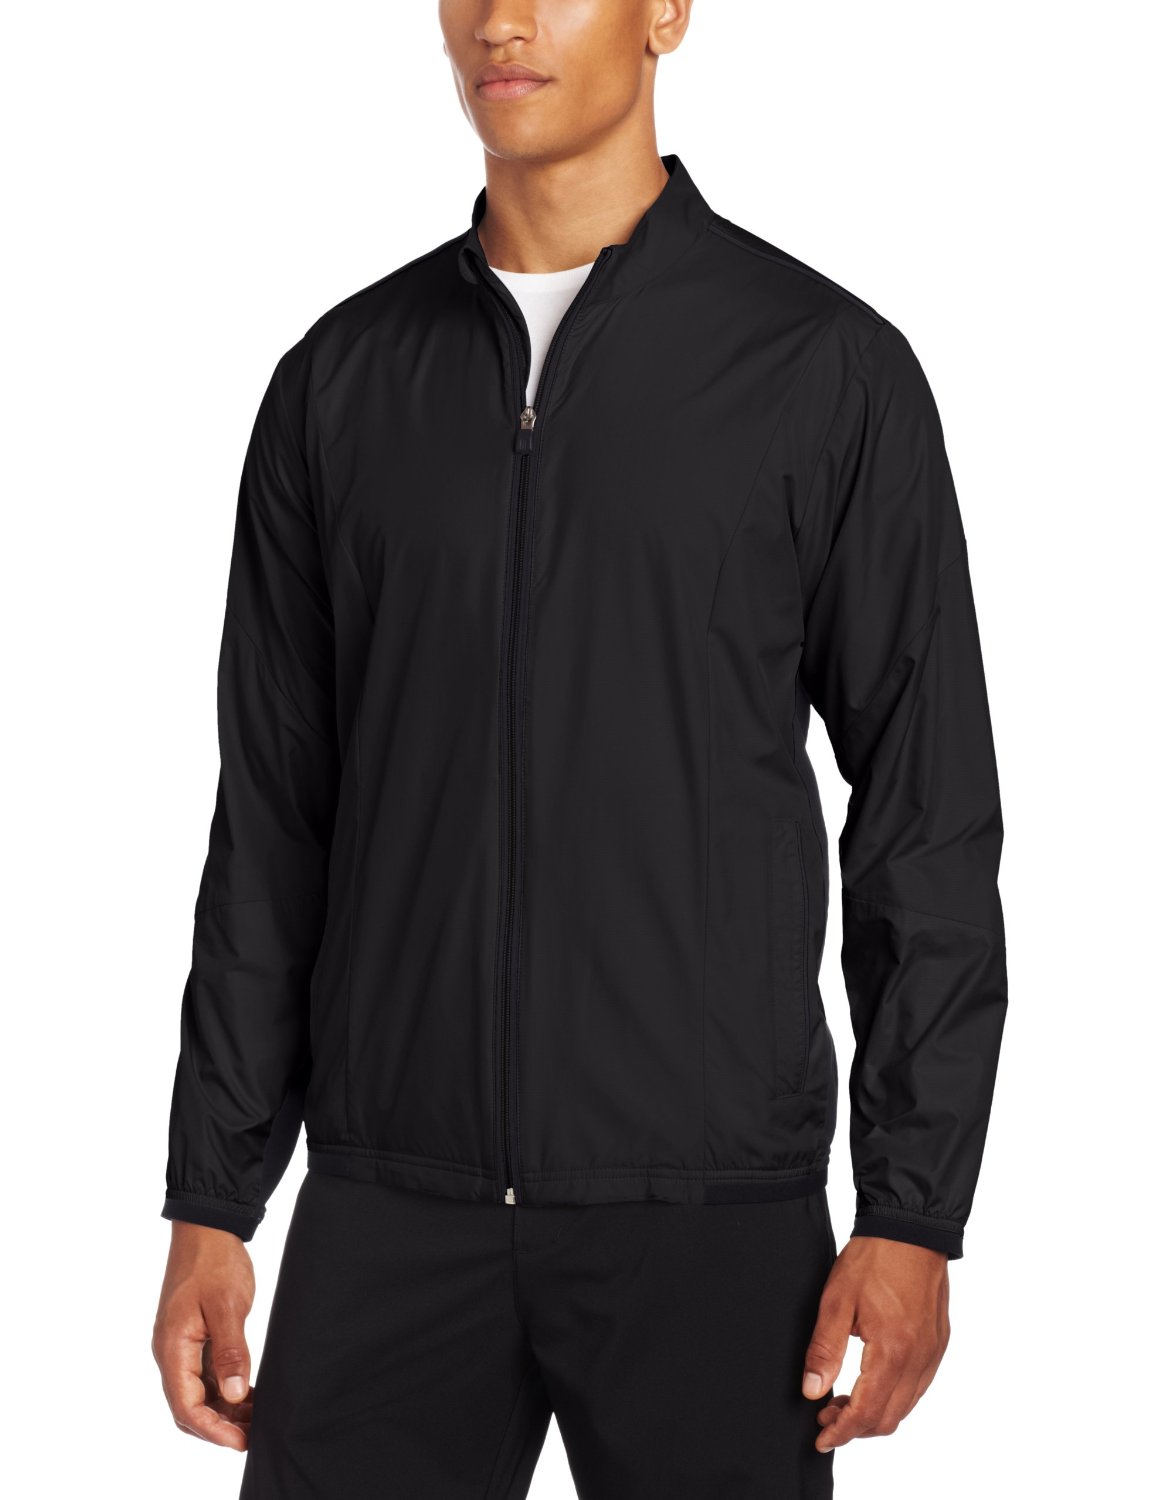 adidas golf windbreaker jacket